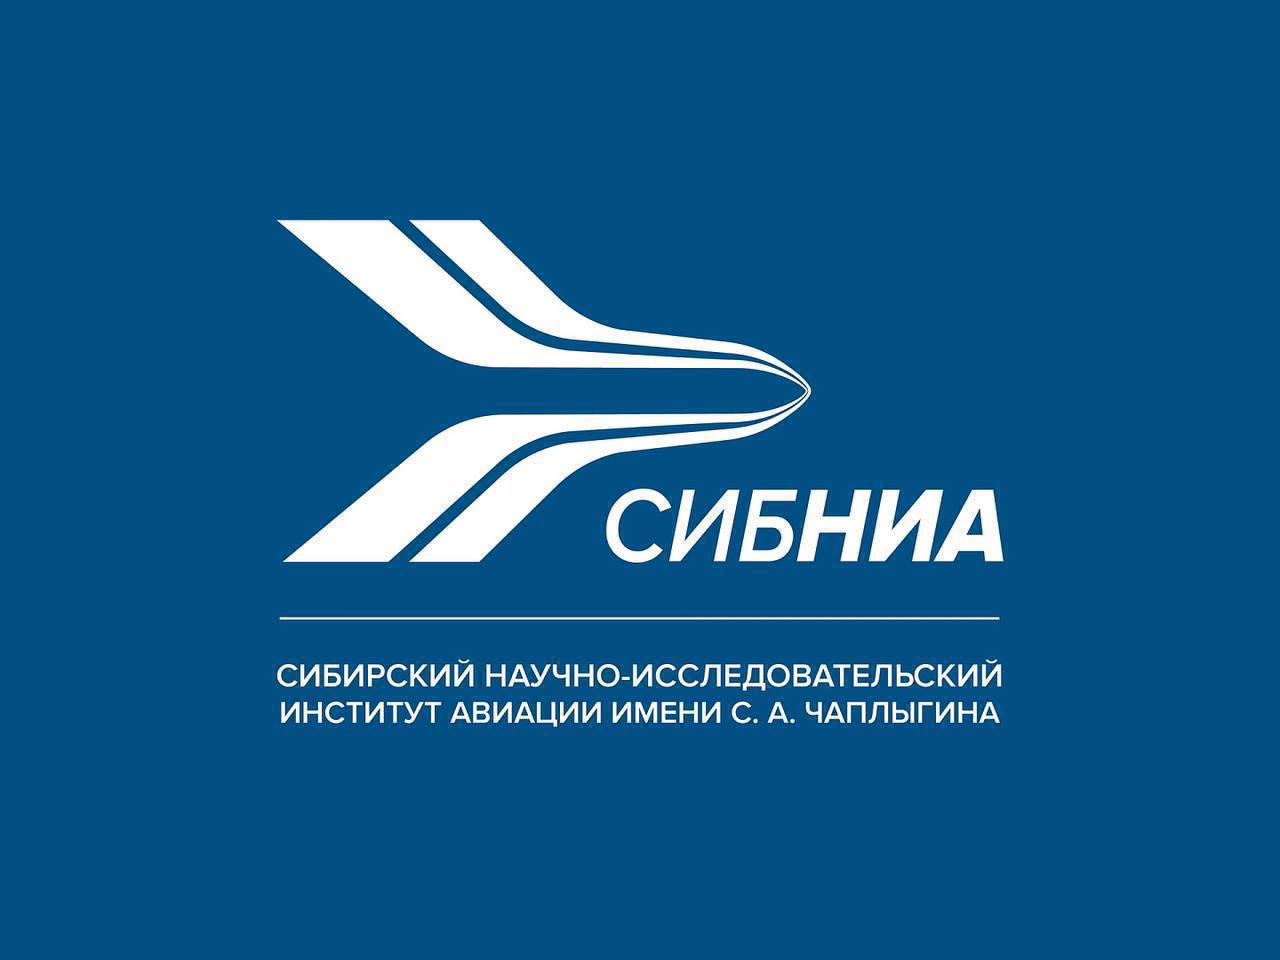 Сотрудники СибНИА приняли участие в отчетно-выборной Конференции Федерации планерного спорта России